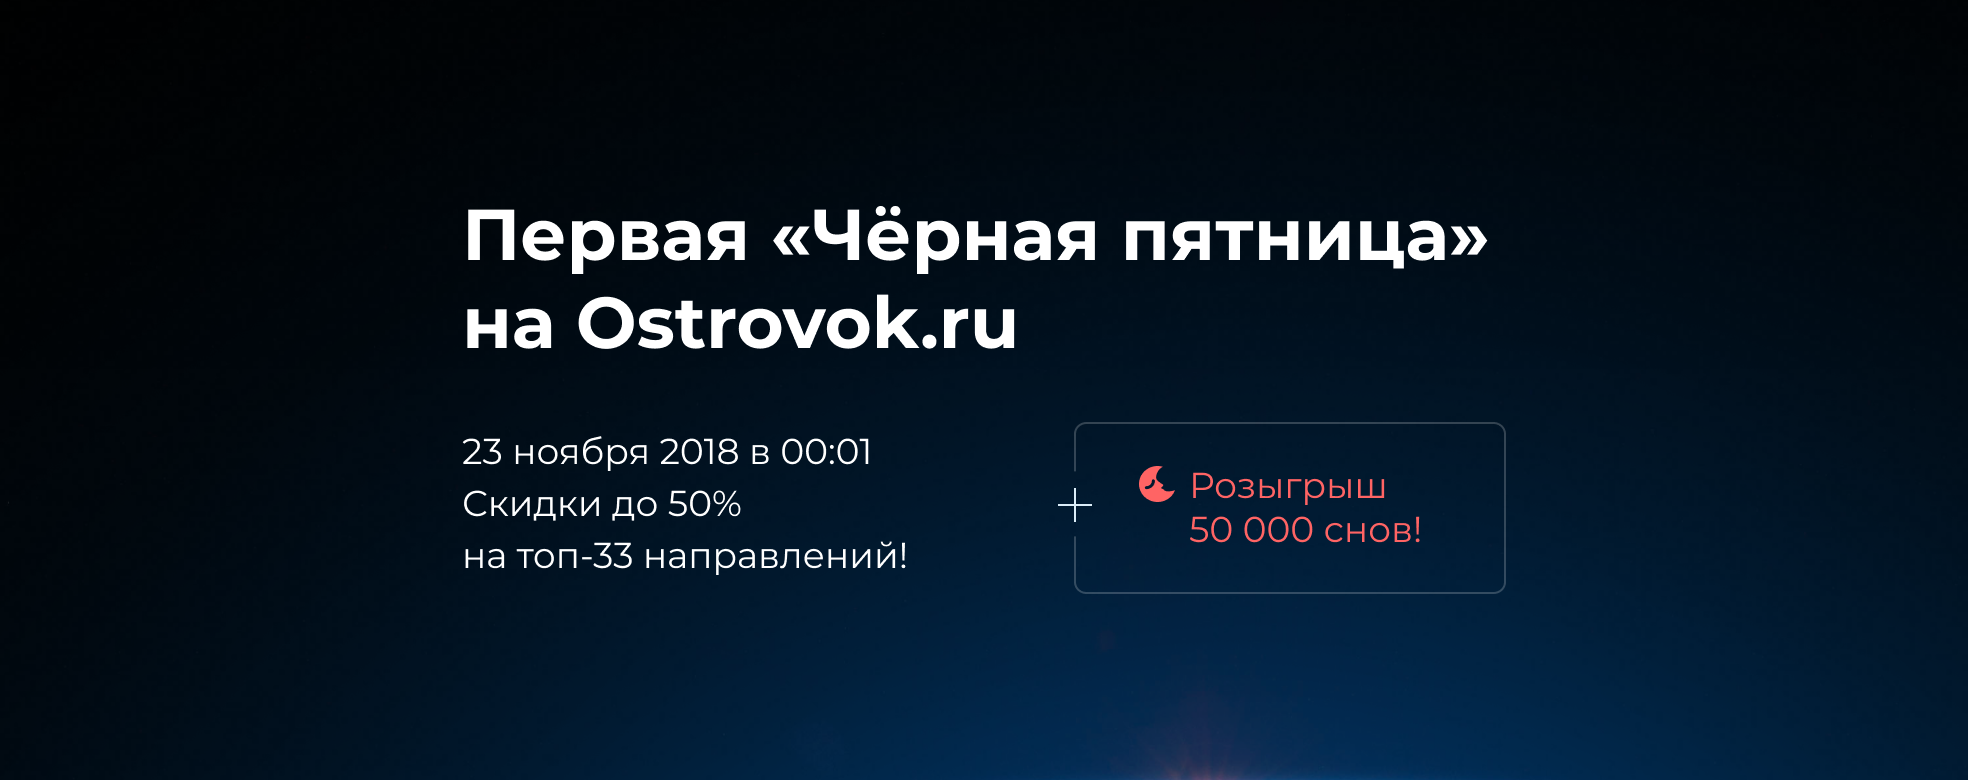 Первая «Чёрная пятница» на Ostrovok.ru — 23 ноября в 00:01